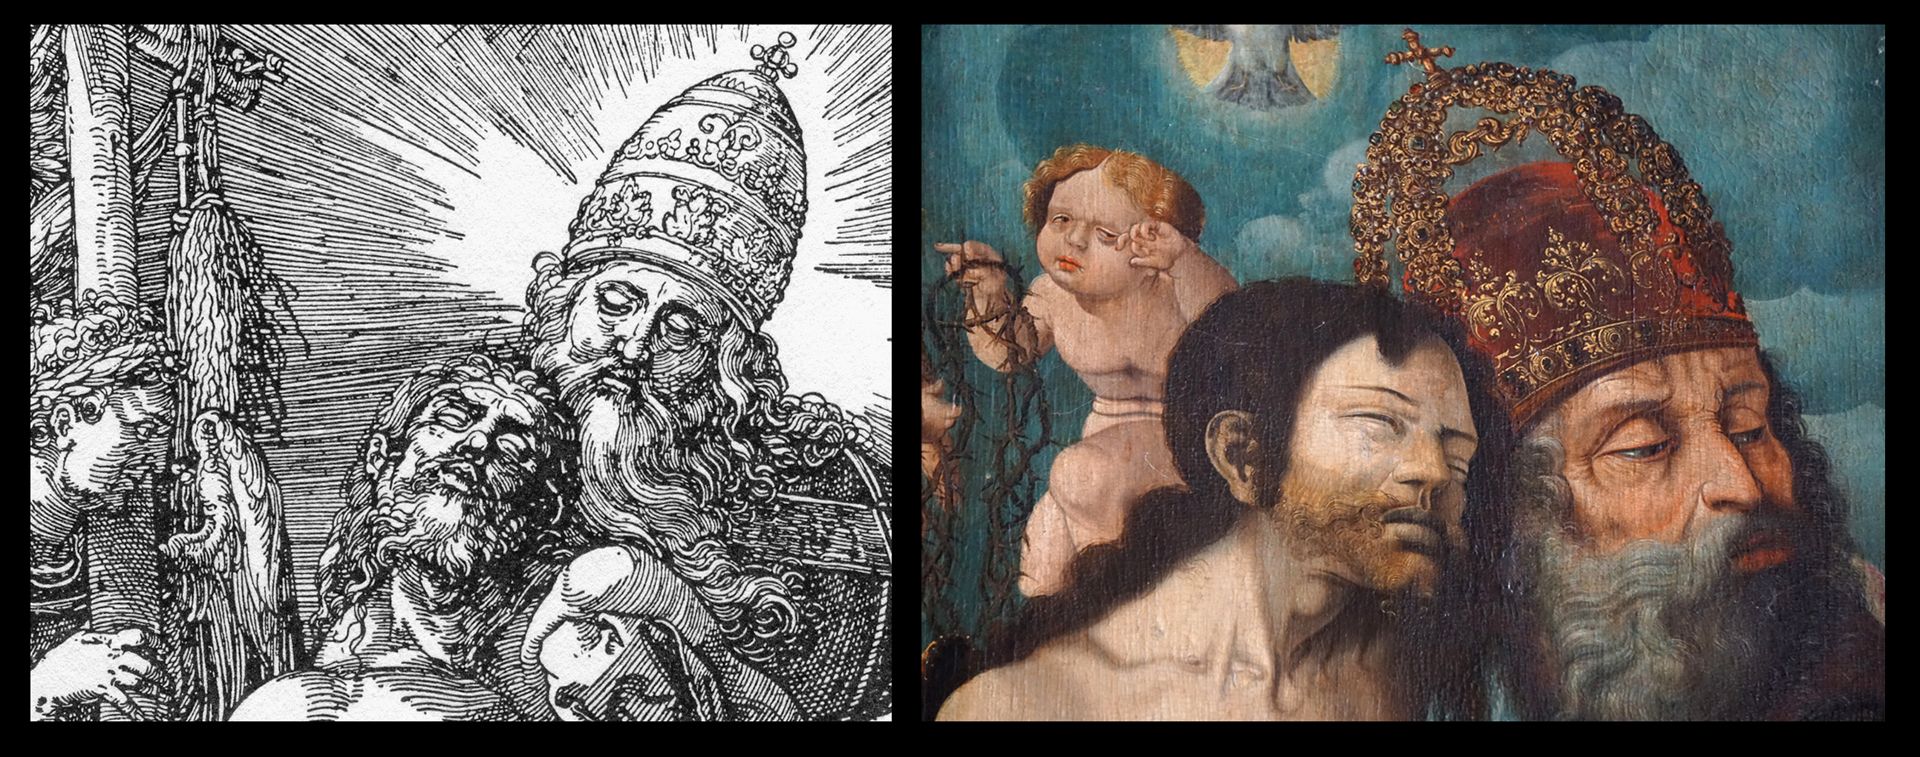 Dürer's foundation plaque Die päpstliche Tiara Gottes bei Dürer ist hier sicherlich konfessionsbedingt zu einer Kaiserkrone geworden.